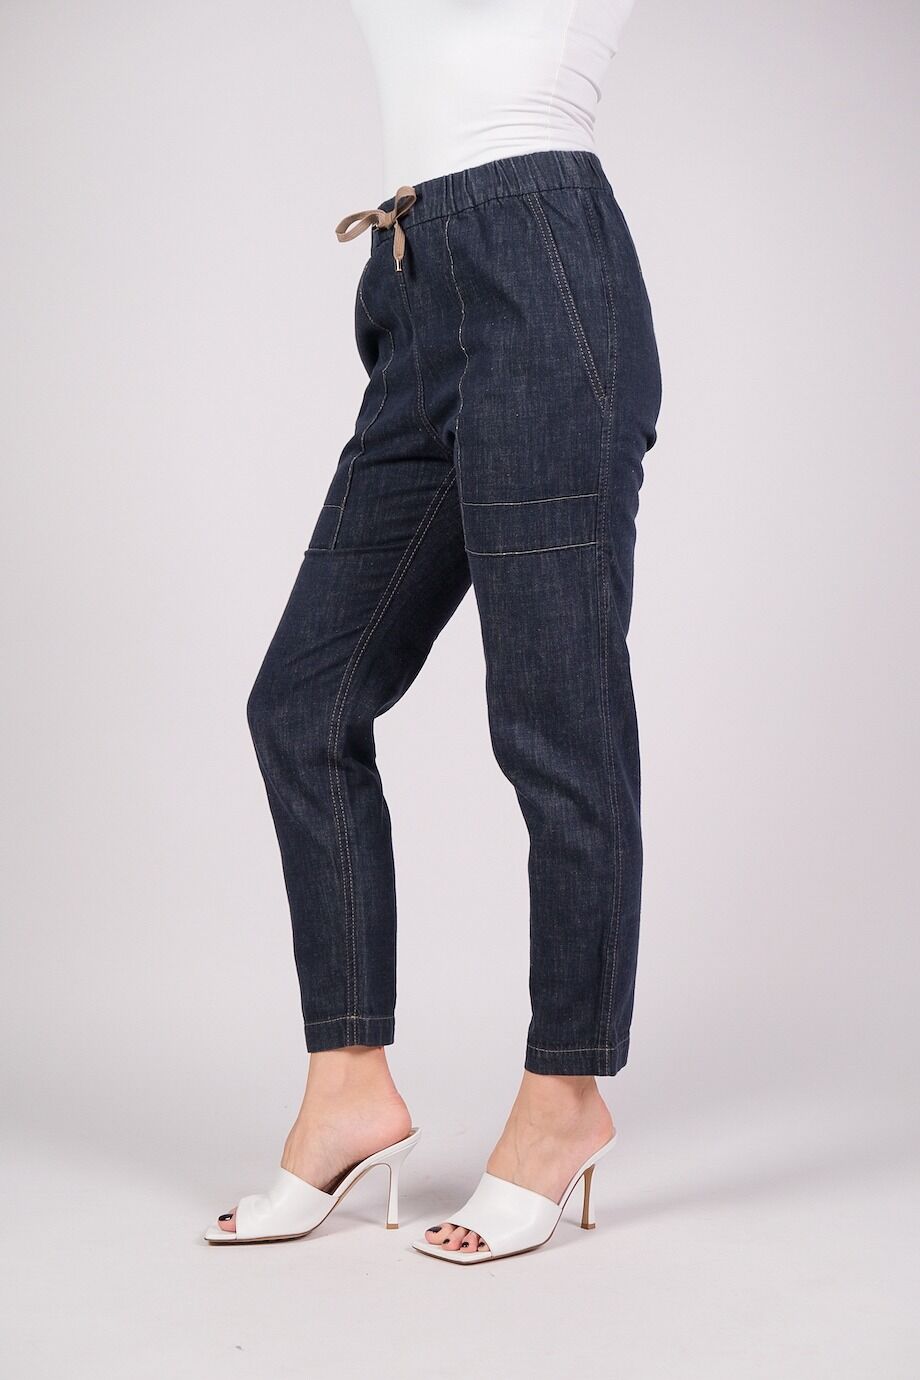 image 3 Джинсовые брюки темно-синего цвета на резинке